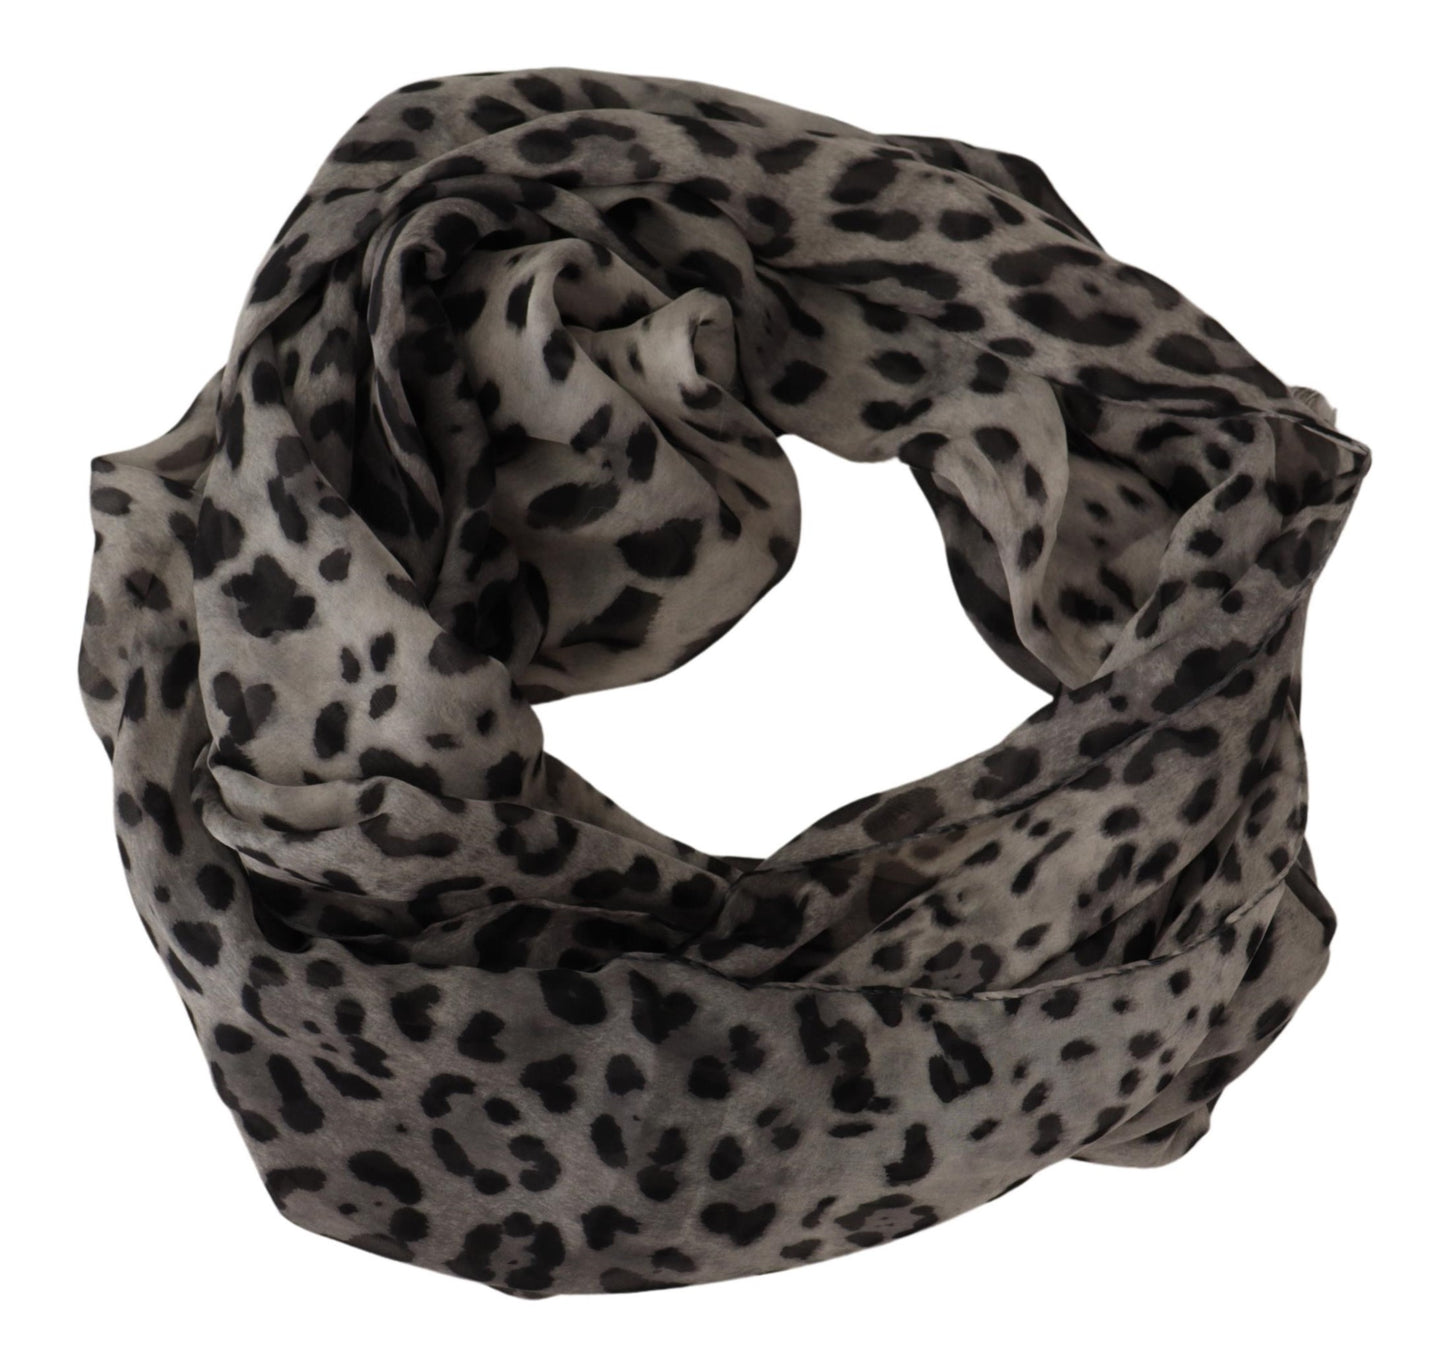 Elegant Leopard Print Silk Shawl Scarf